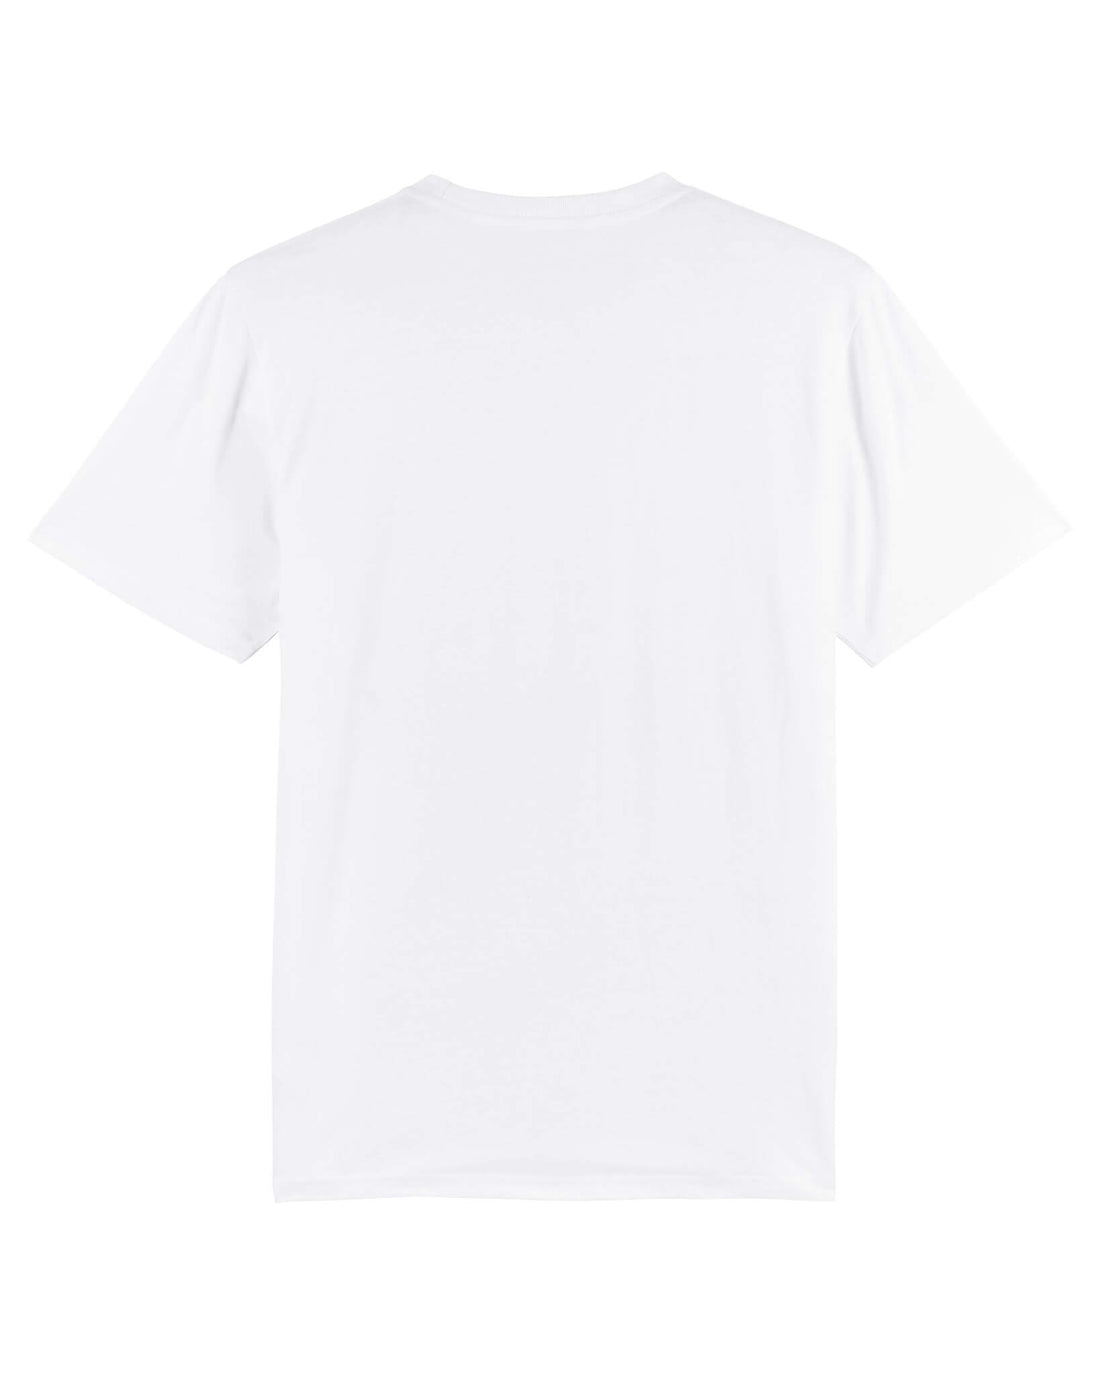 White Skater T-Shirt, The Supply Network Back Print